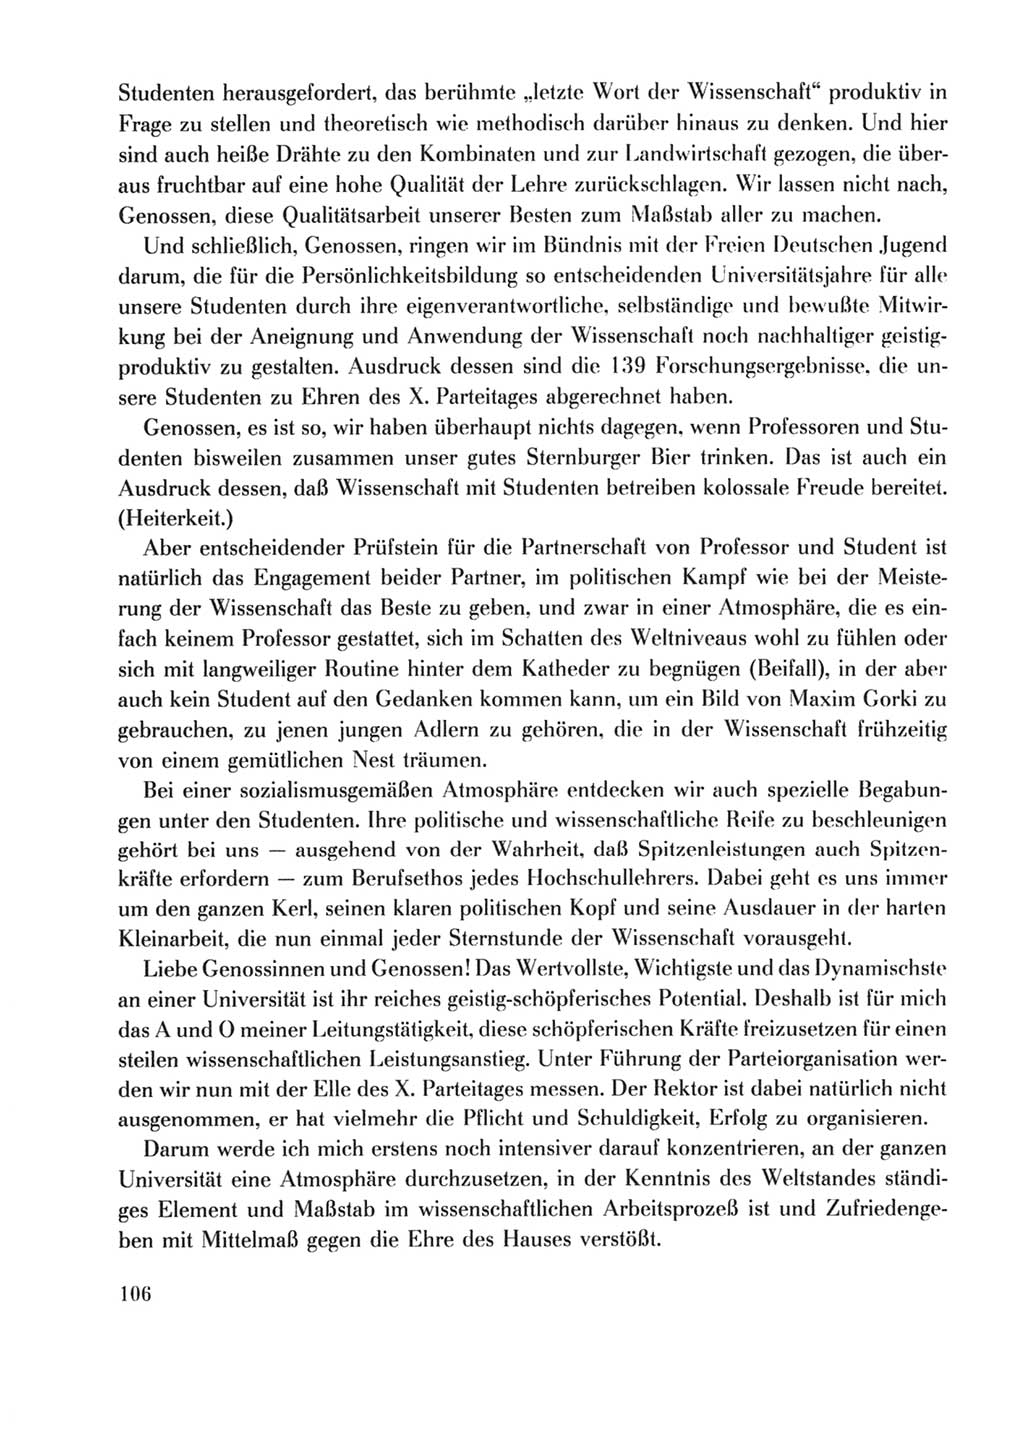 Protokoll der Verhandlungen des Ⅹ. Parteitages der Sozialistischen Einheitspartei Deutschlands (SED) [Deutsche Demokratische Republik (DDR)] 1981, Band 2, Seite 106 (Prot. Verh. Ⅹ. PT SED DDR 1981, Bd. 2, S. 106)